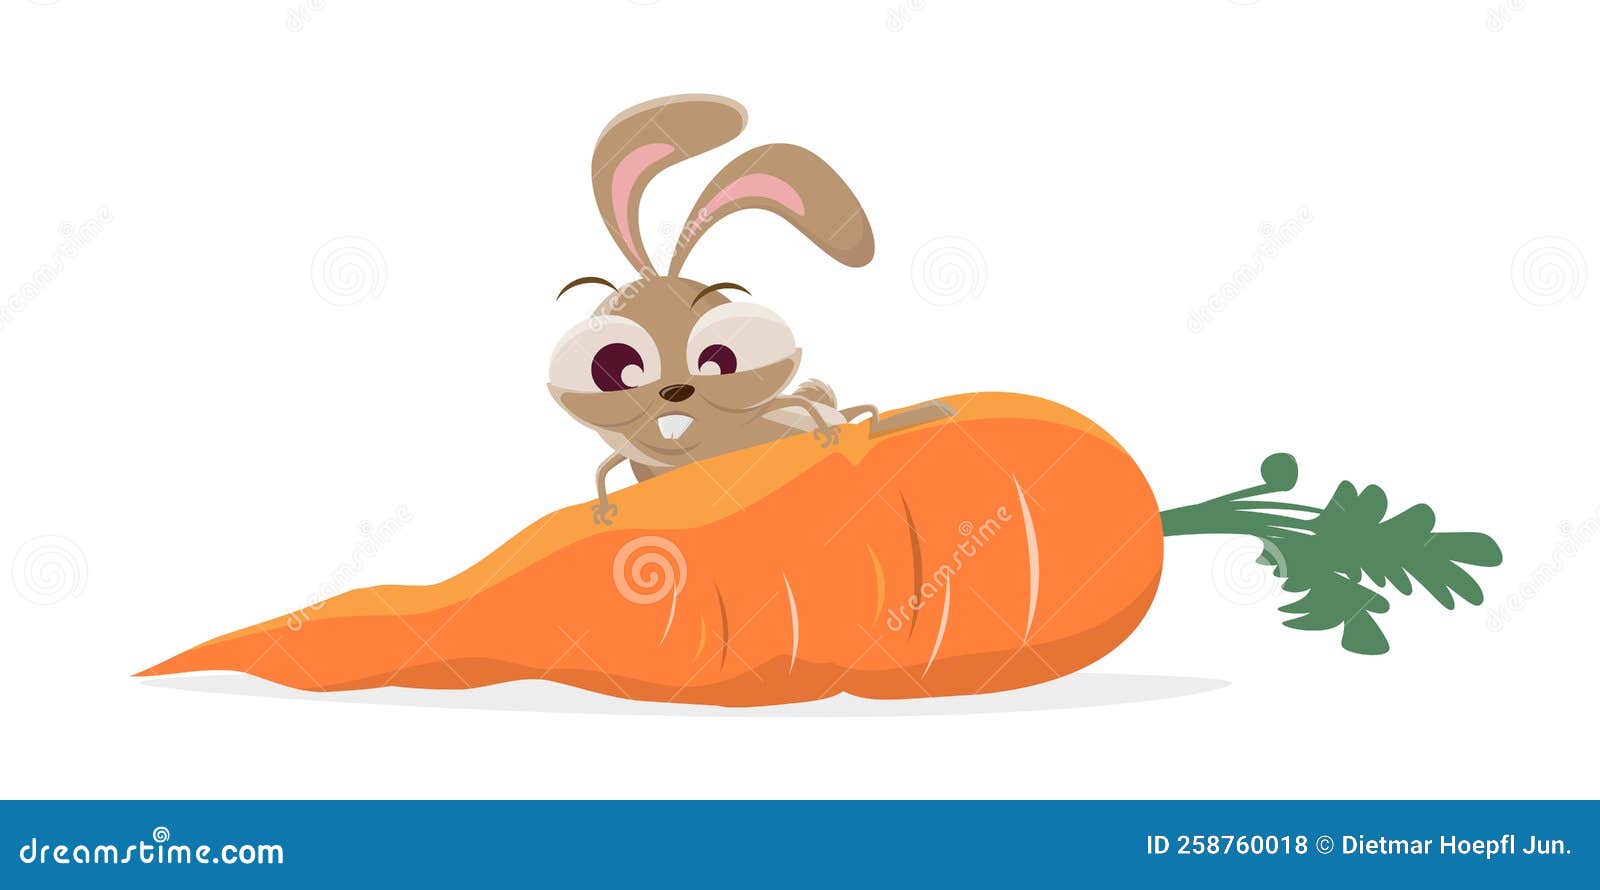 滑稽兔宝宝的动画片 向量例证. 插画 包括有 食物, 爱拥抱, 红萝卜, 收获, 逗人喜爱, 兔子, 装饰 - 48321120